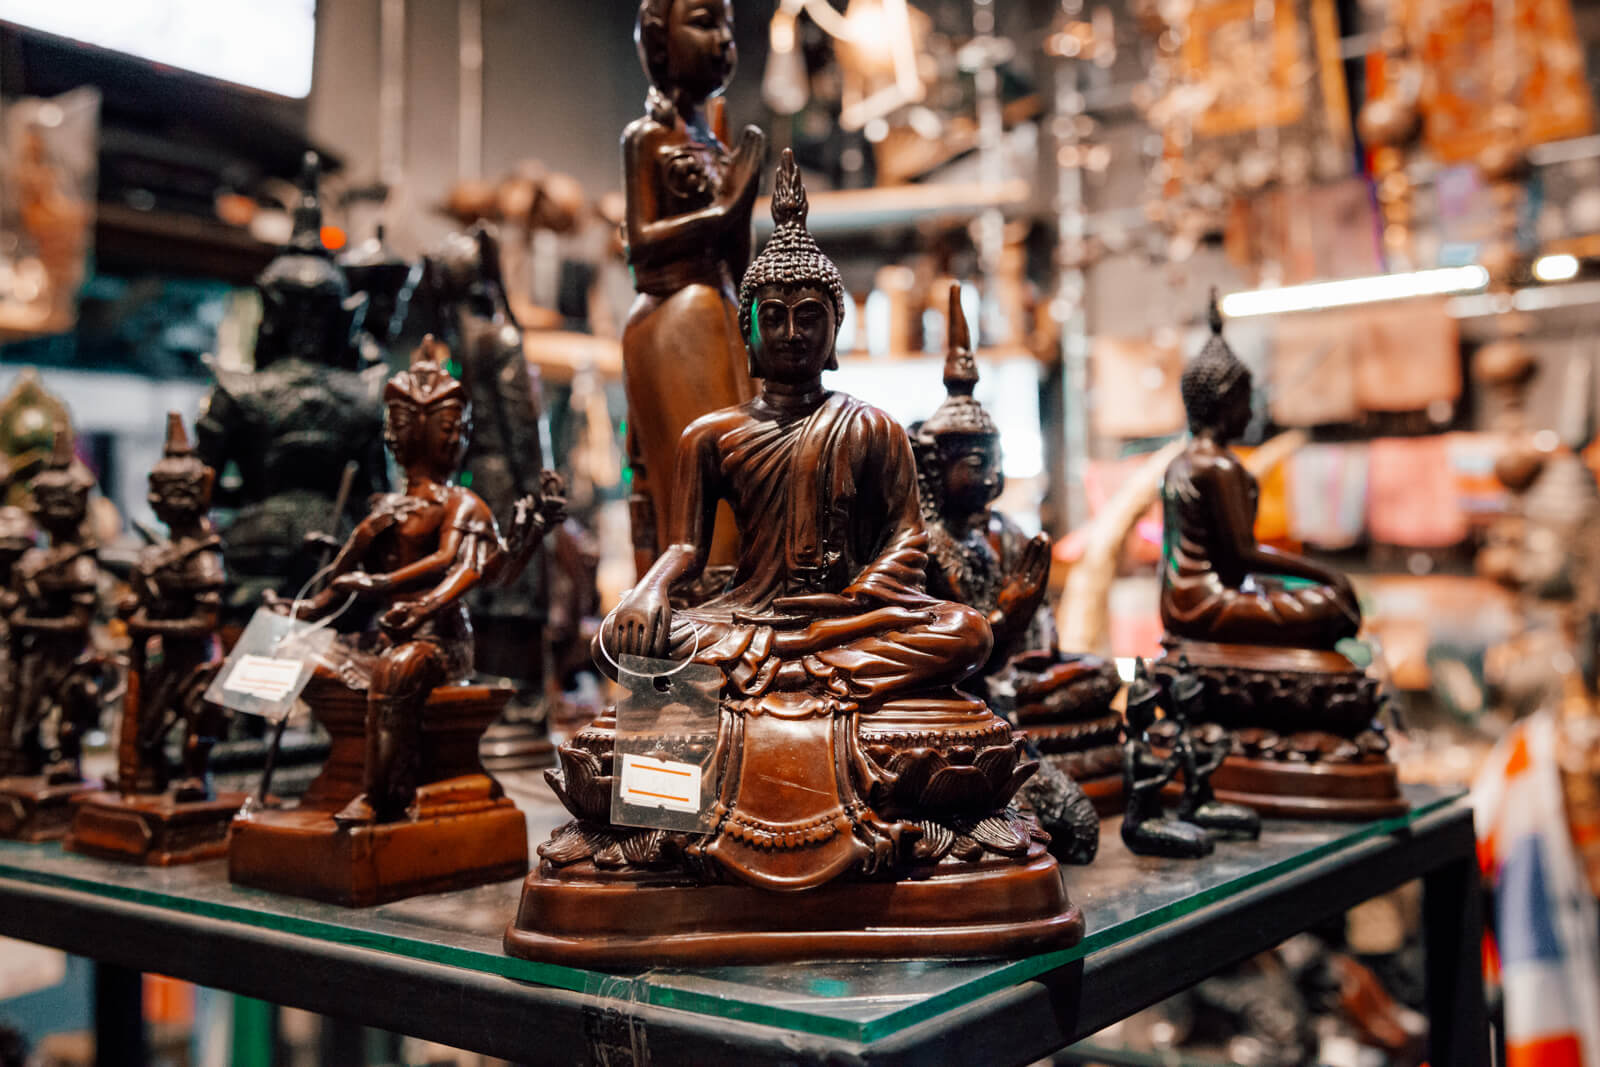 Imagens de Buda vendidas em Bangkok